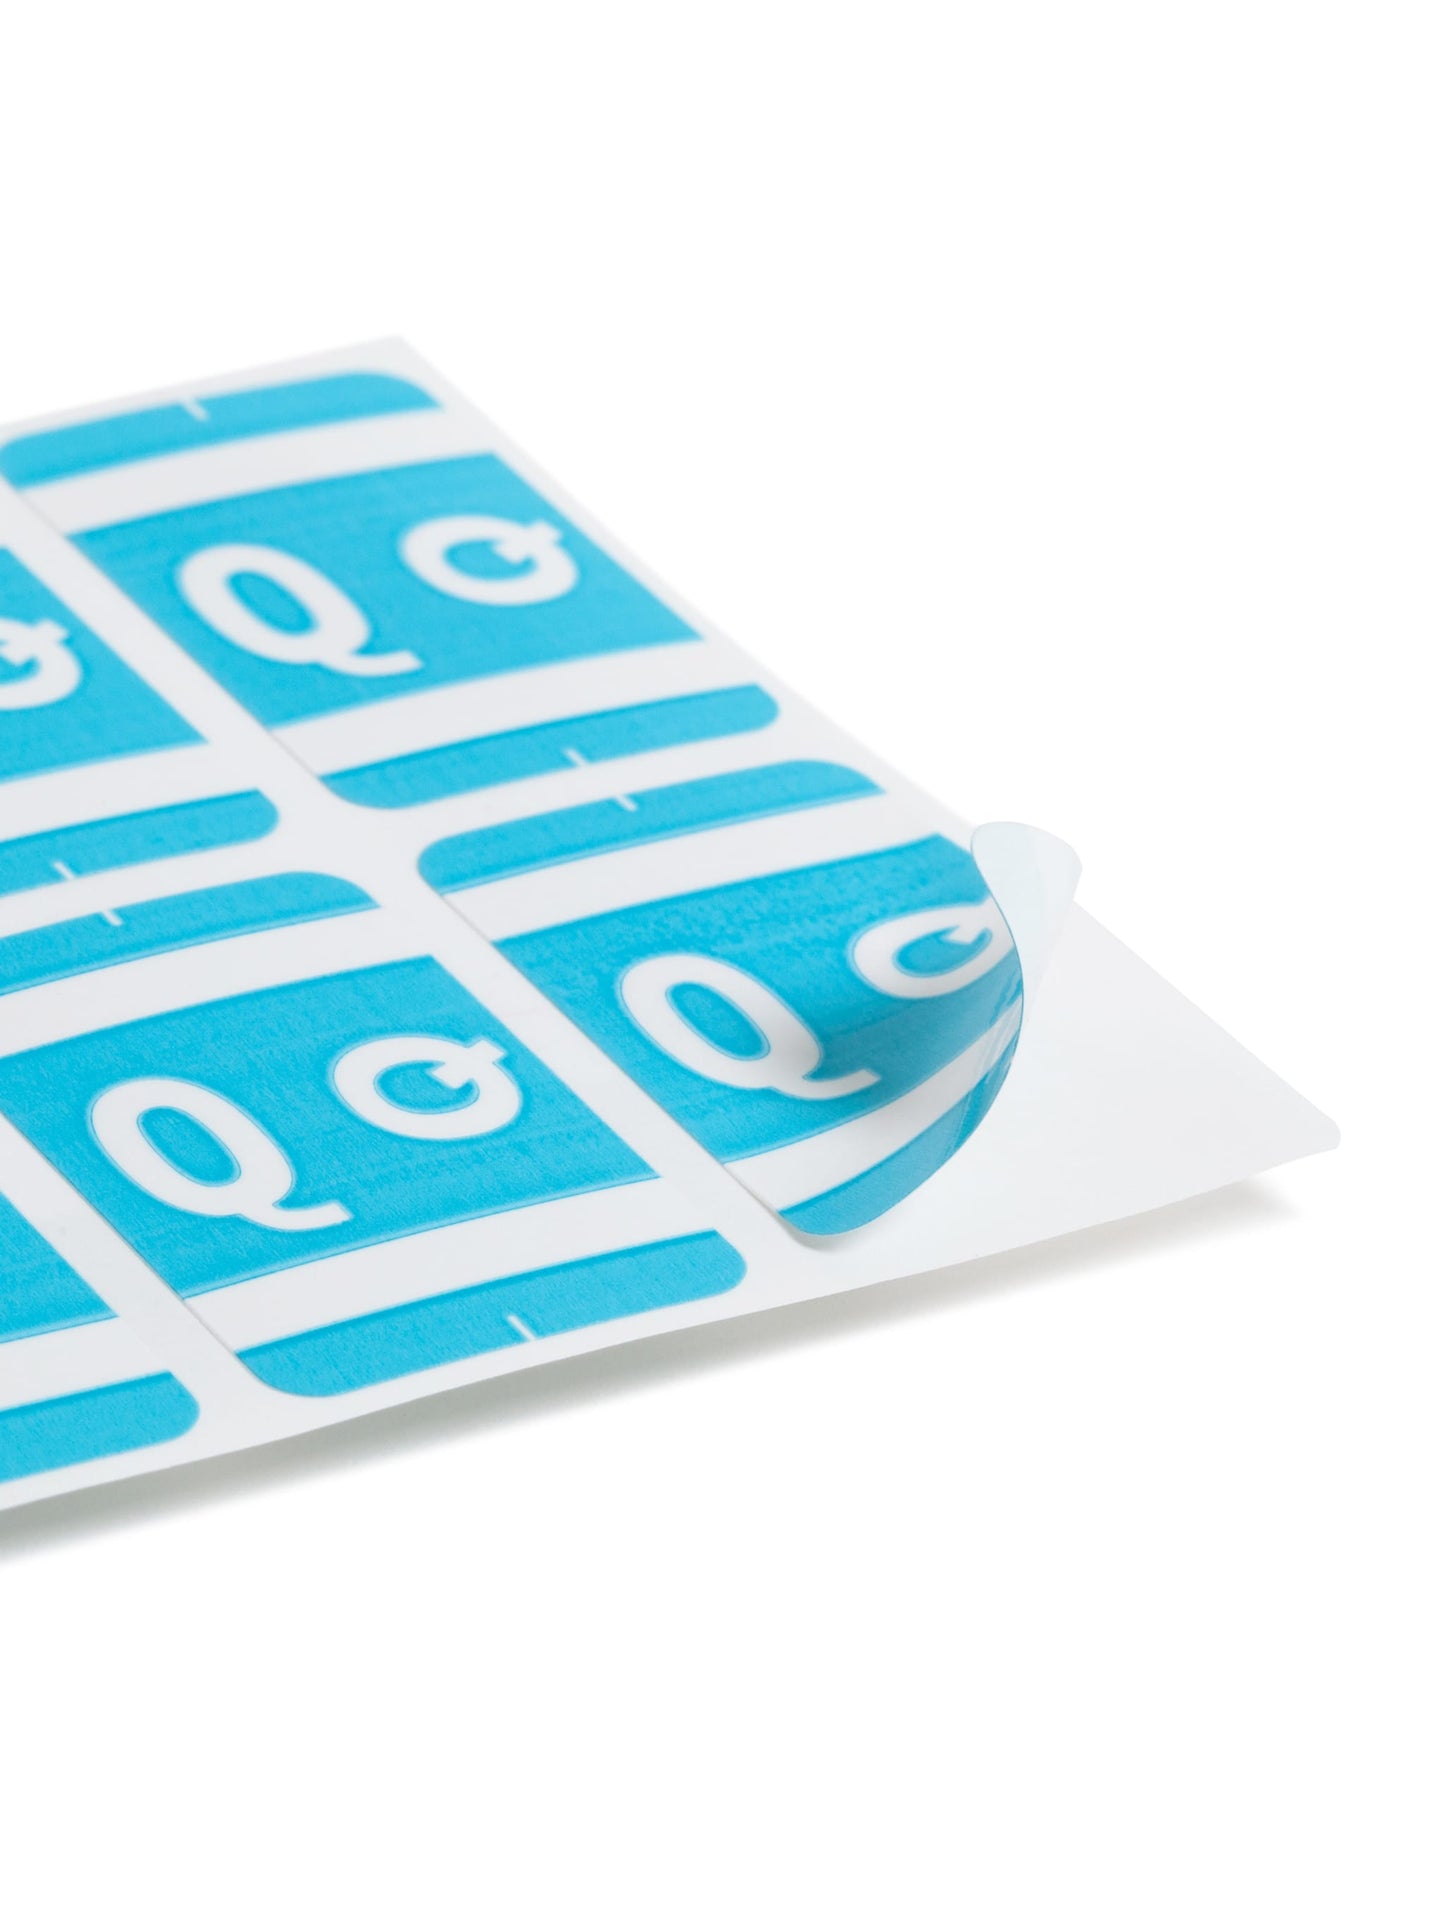 AlphaZ® ACCS Color Coded Alphabetic Labels - Sheets, Light Blue Color, 1" X 1-5/8" Size, 